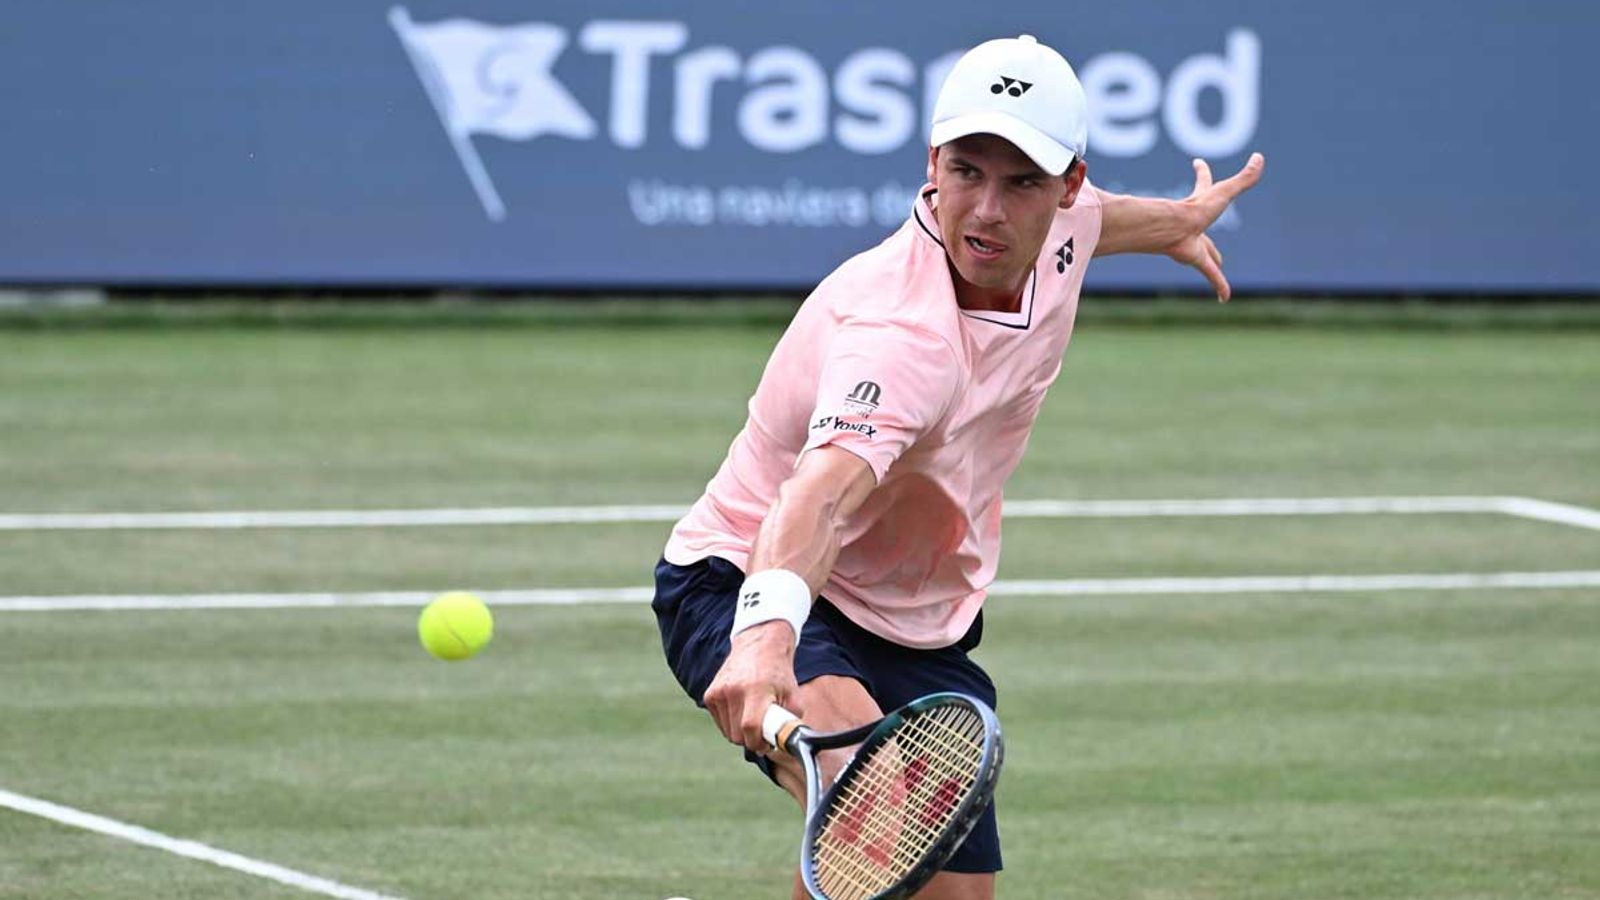 Tennis Daniel Altmaier zieht bei Turnier auf Mallorca ins Viertelfinale ein Tennis News Sky Sport